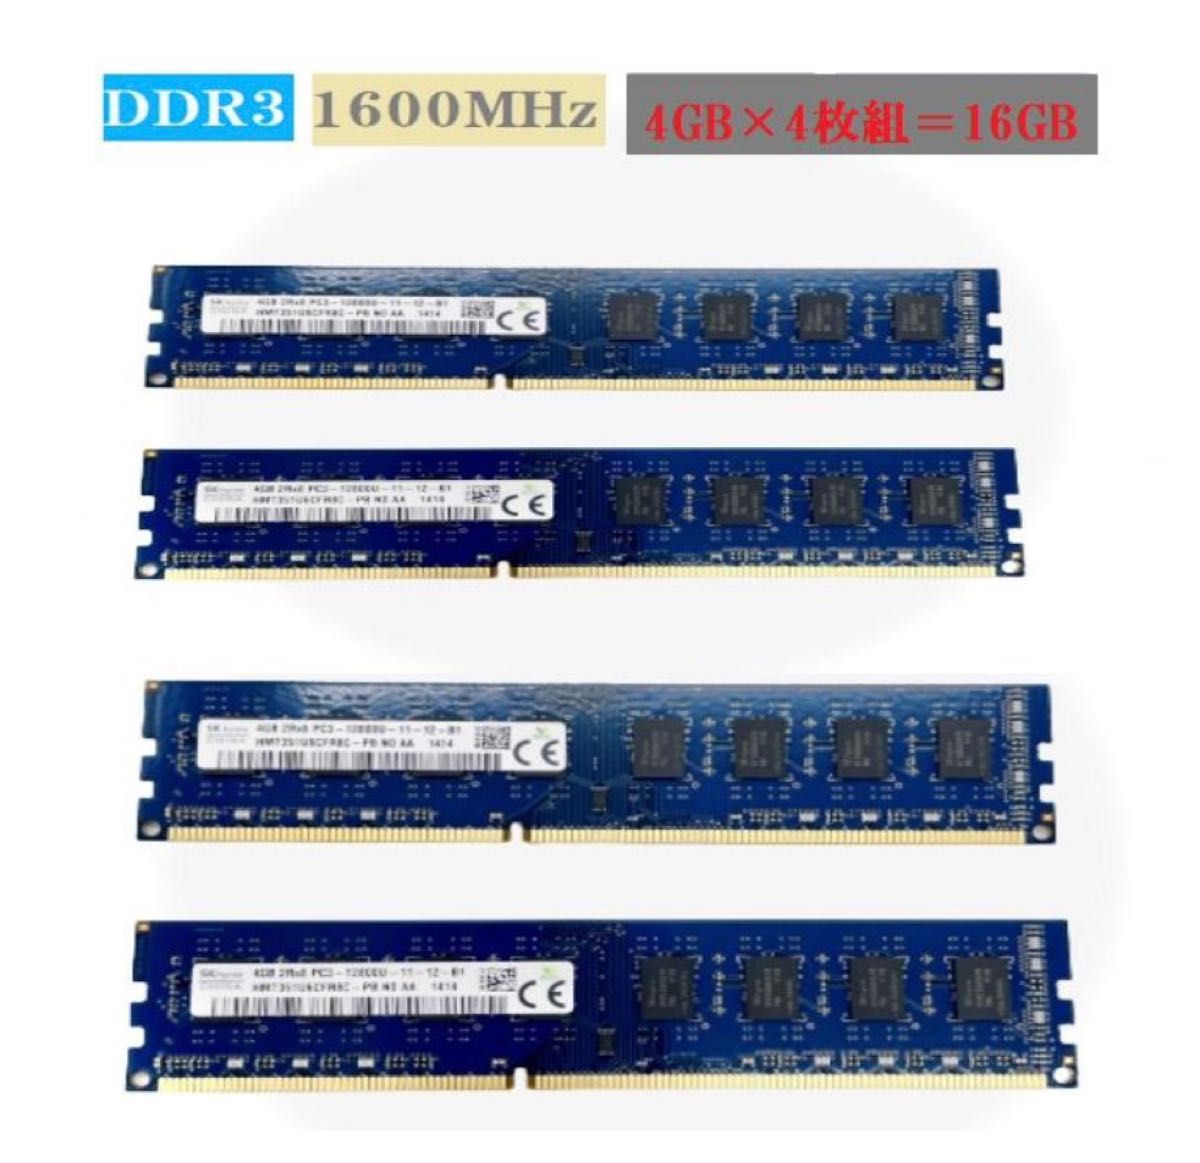 SK hynix PC3-12800U DDR3 1600Mhz 4GB デスクトップPC用メモリ/四枚セット 【新品バルク品】